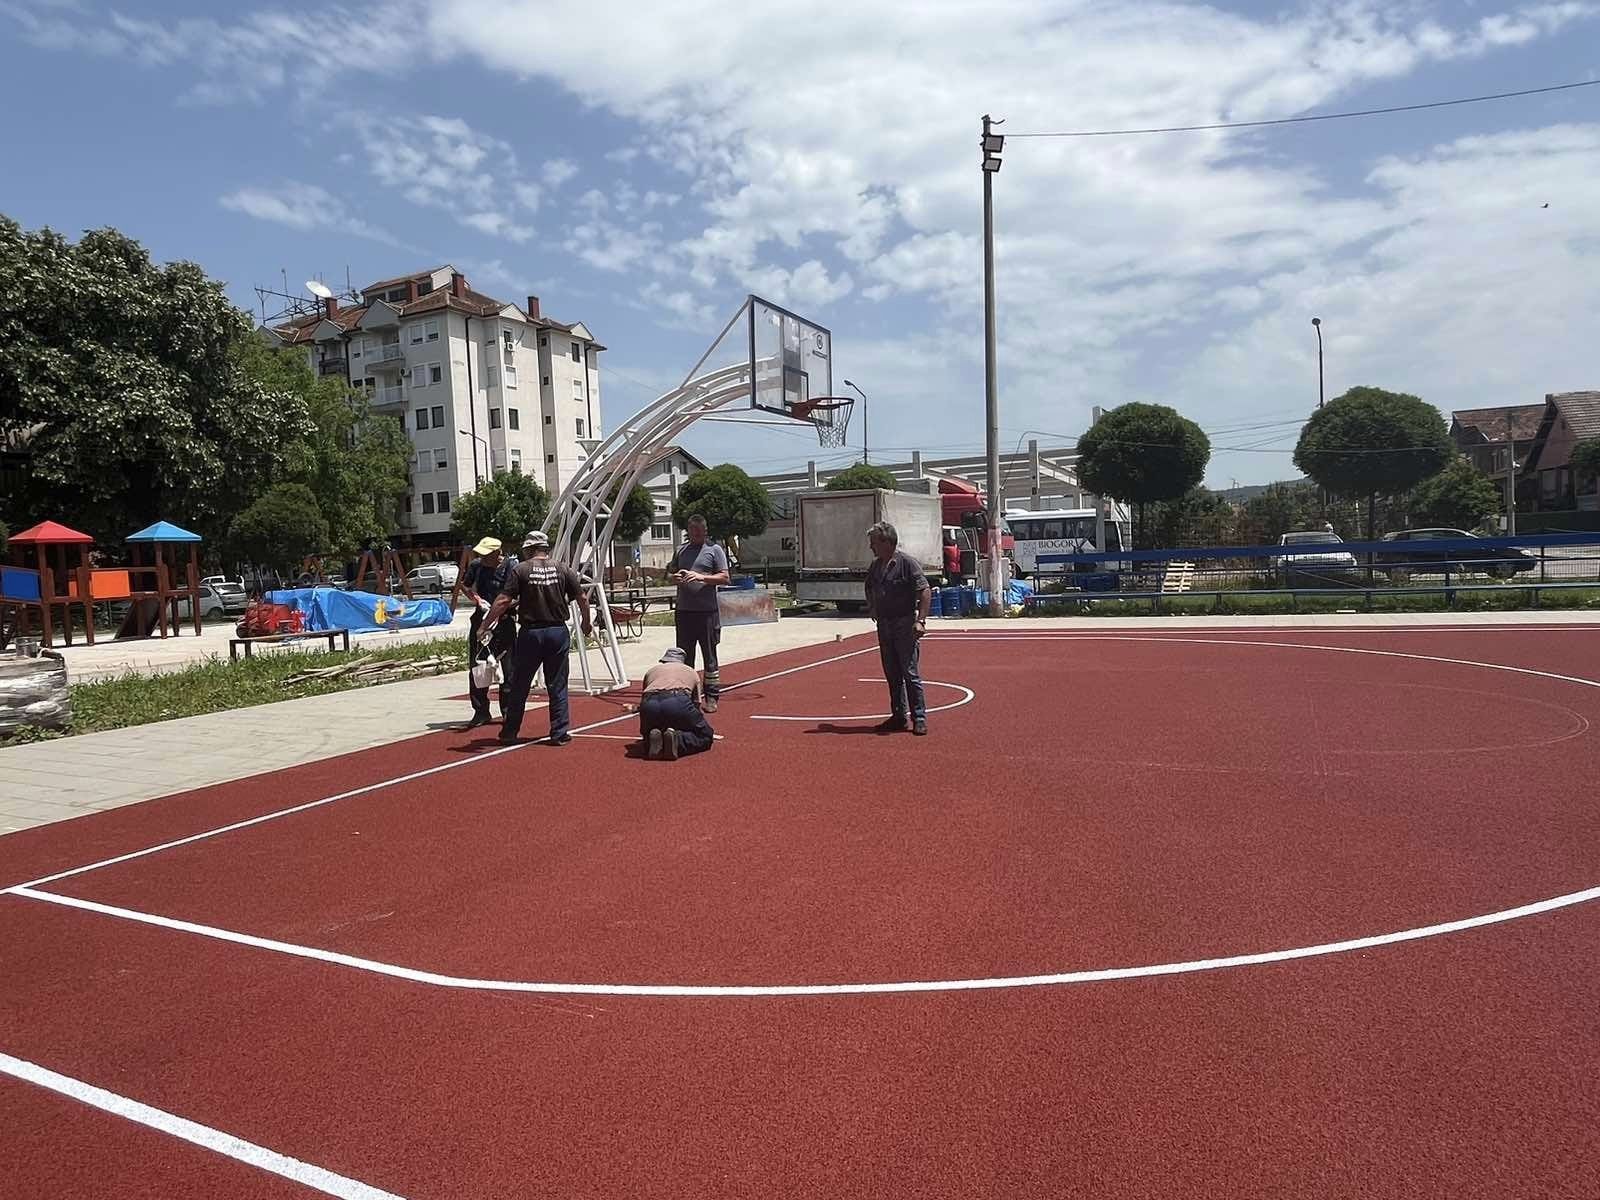 Privode se kraju radovi na izgradnji košarkaškog terena i dečijeg igrališta u MZ Gloždak